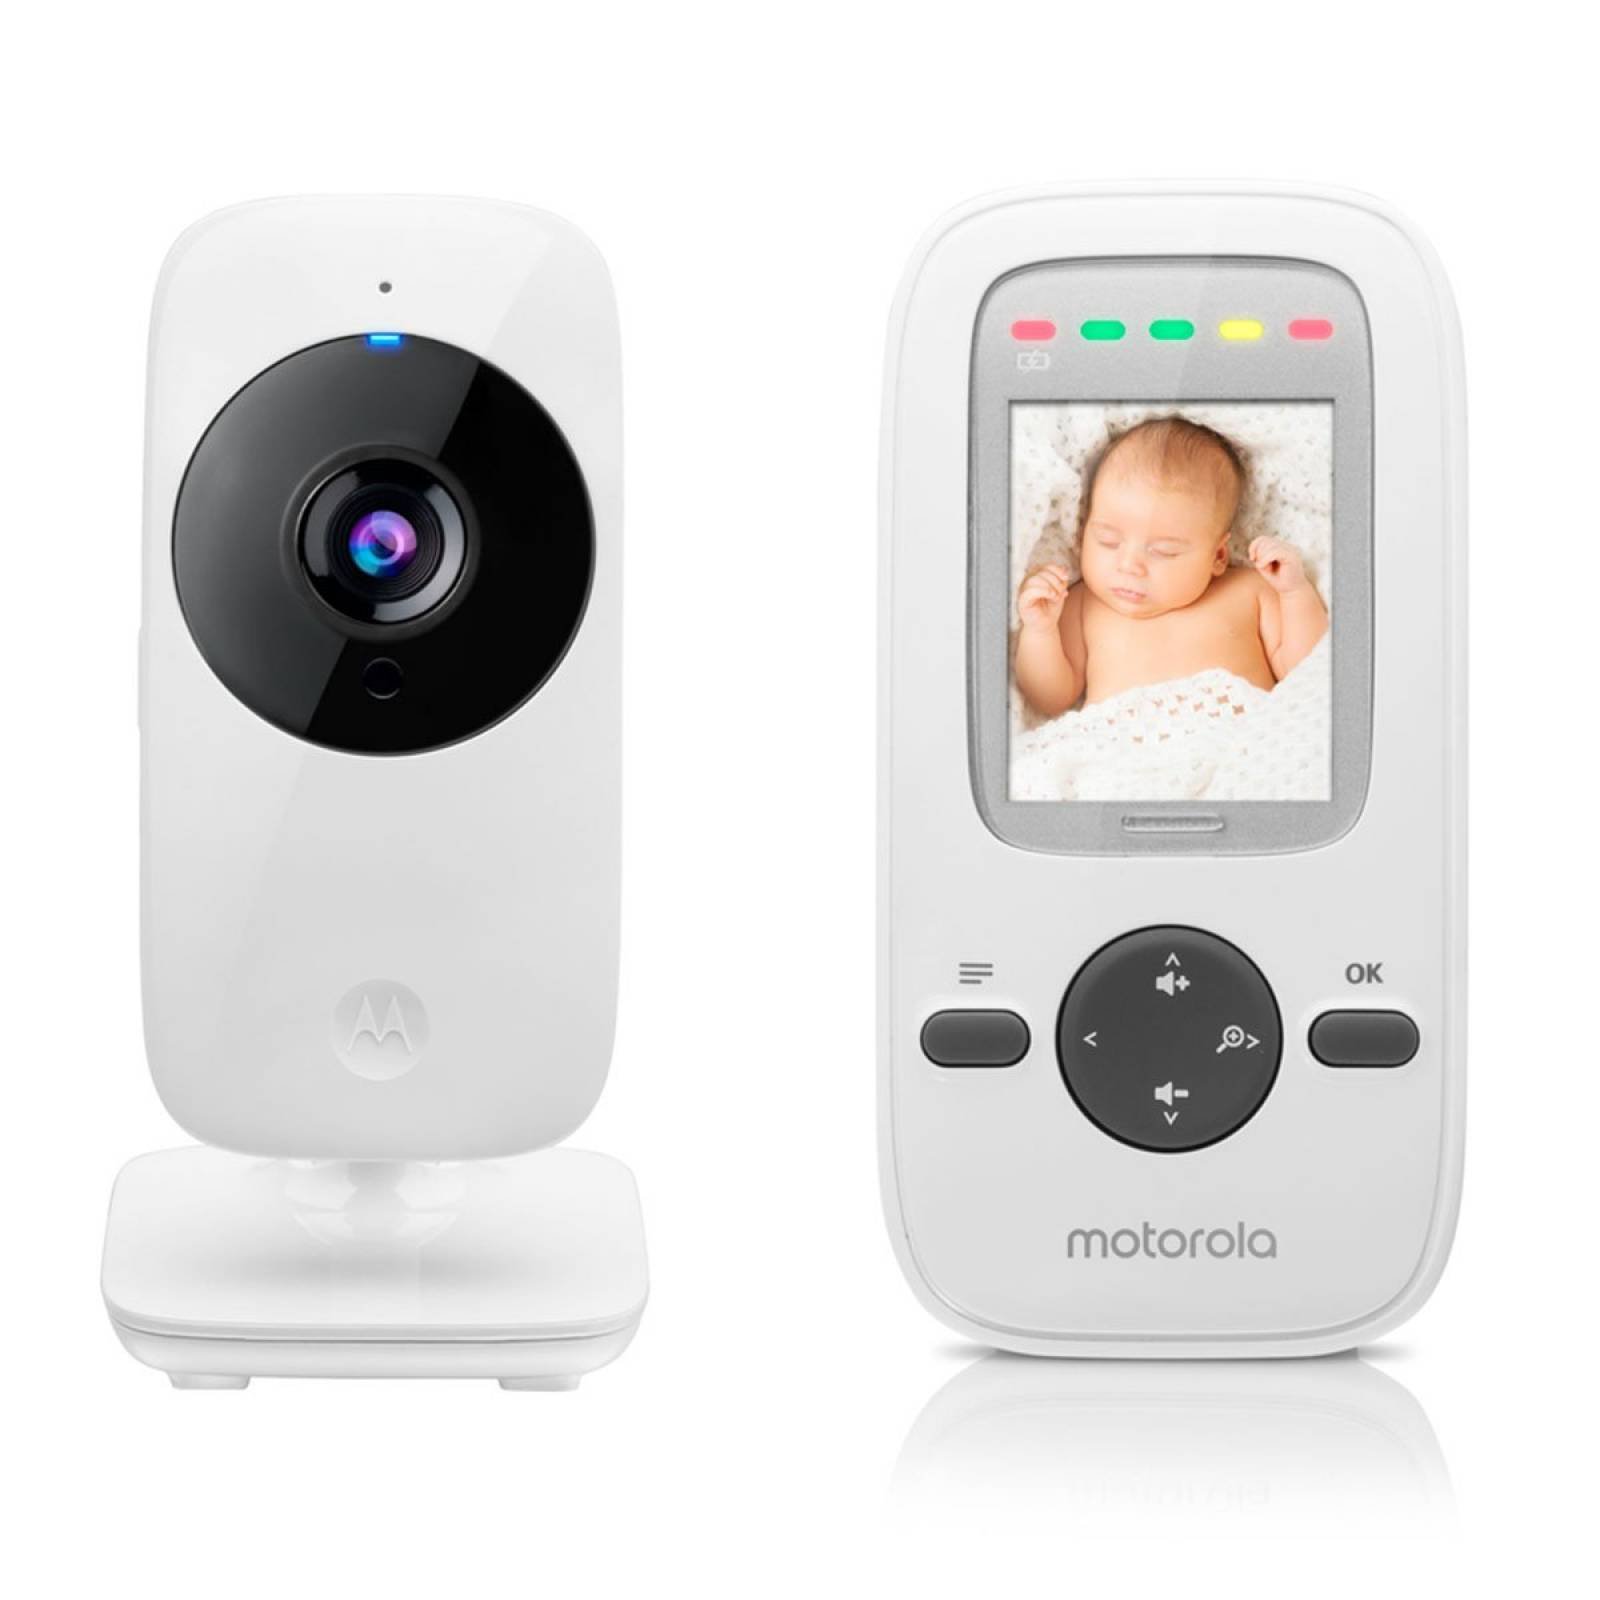 Videocamara Monitor Para Bebes Motorola Mbp481